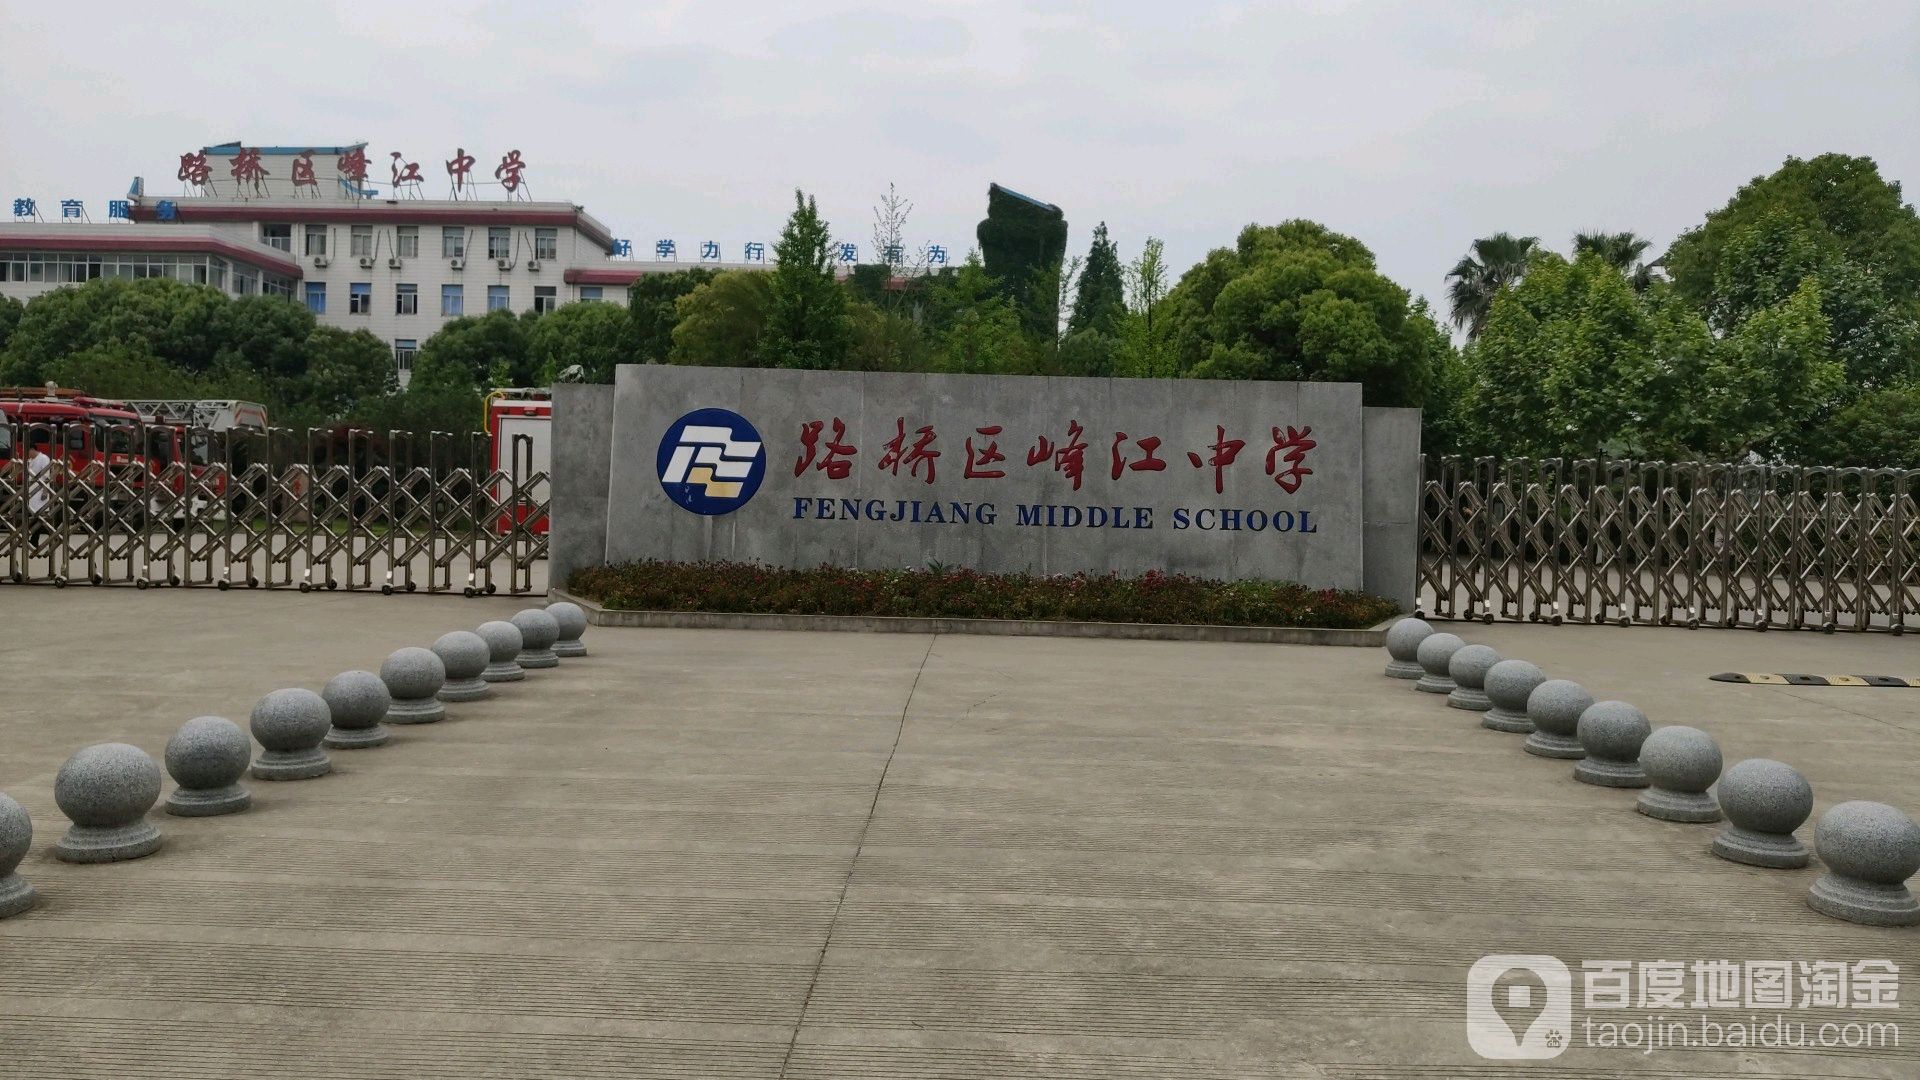 峰江中学校徽图片